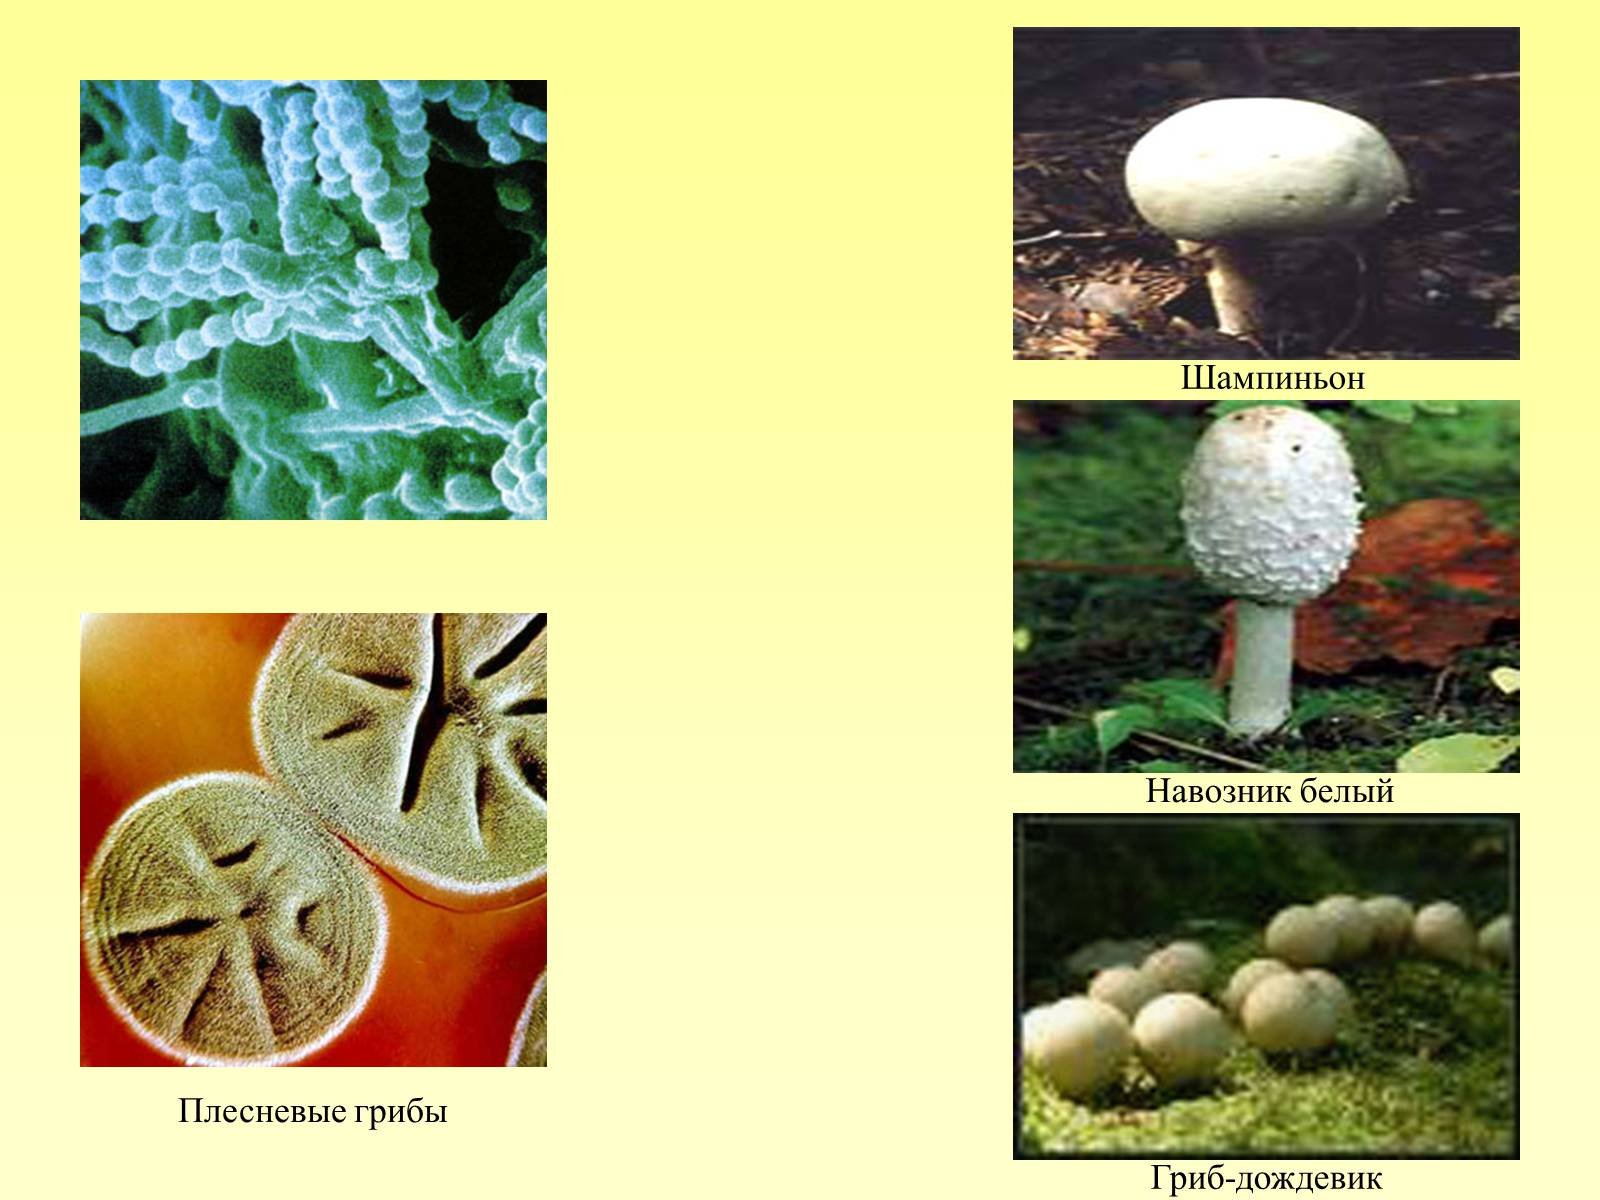 Роль плесневых грибов в жизни человека. Роль грибов в природе и жизни человека 5 класс биология. Грибы в жизни человека и в природе. Важность грибов в природе. Грибы для человека и природы.